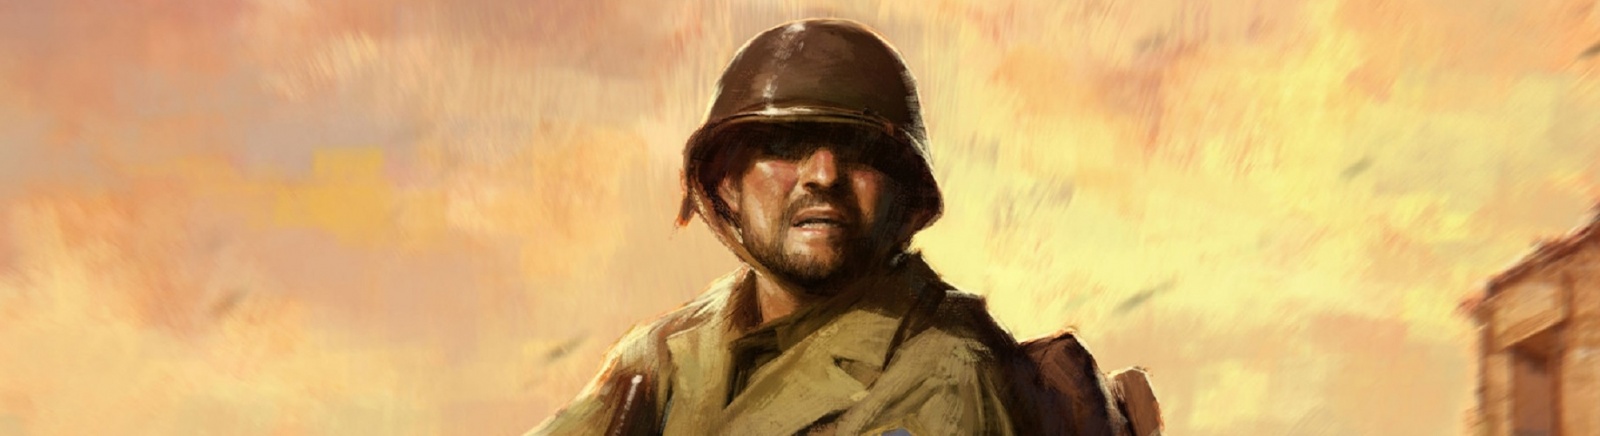 Дата выхода Medal of Honor: Above and Beyond  на PC в России и во всем мире